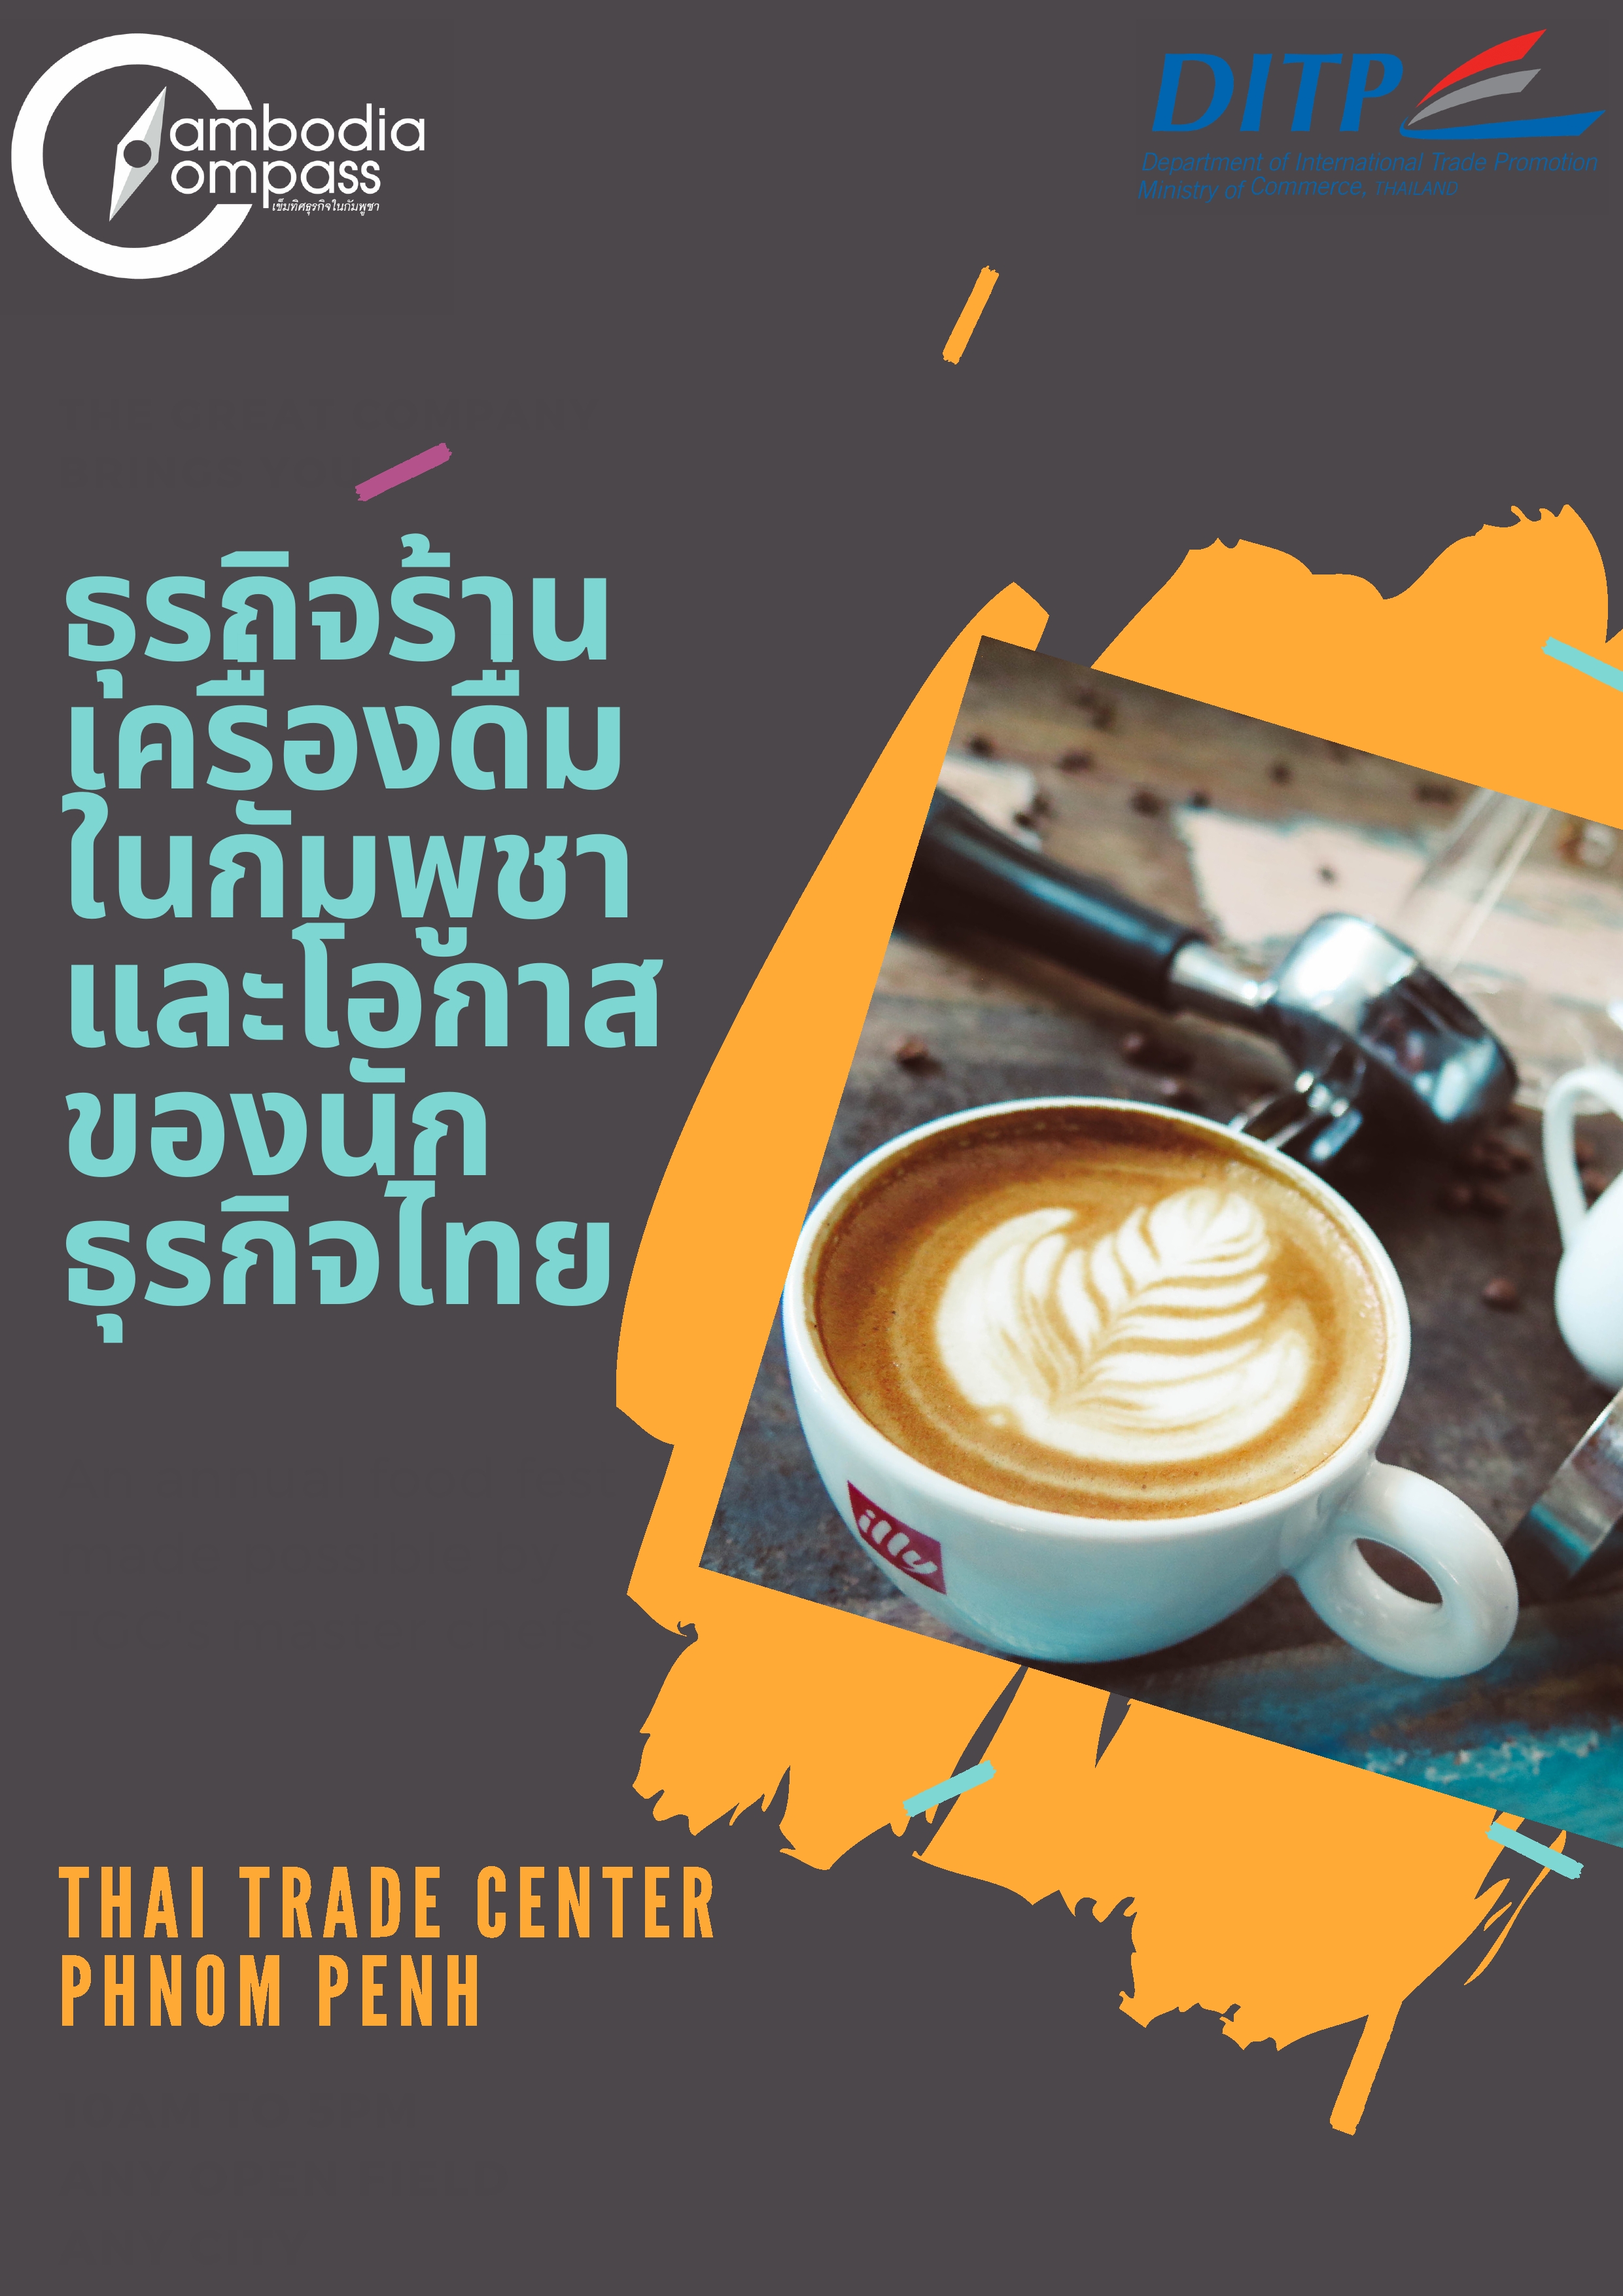 ธุรกิจร้านเครื่องดื่มในกัมพูชา และโอกาสของนักธุรกิจไทย